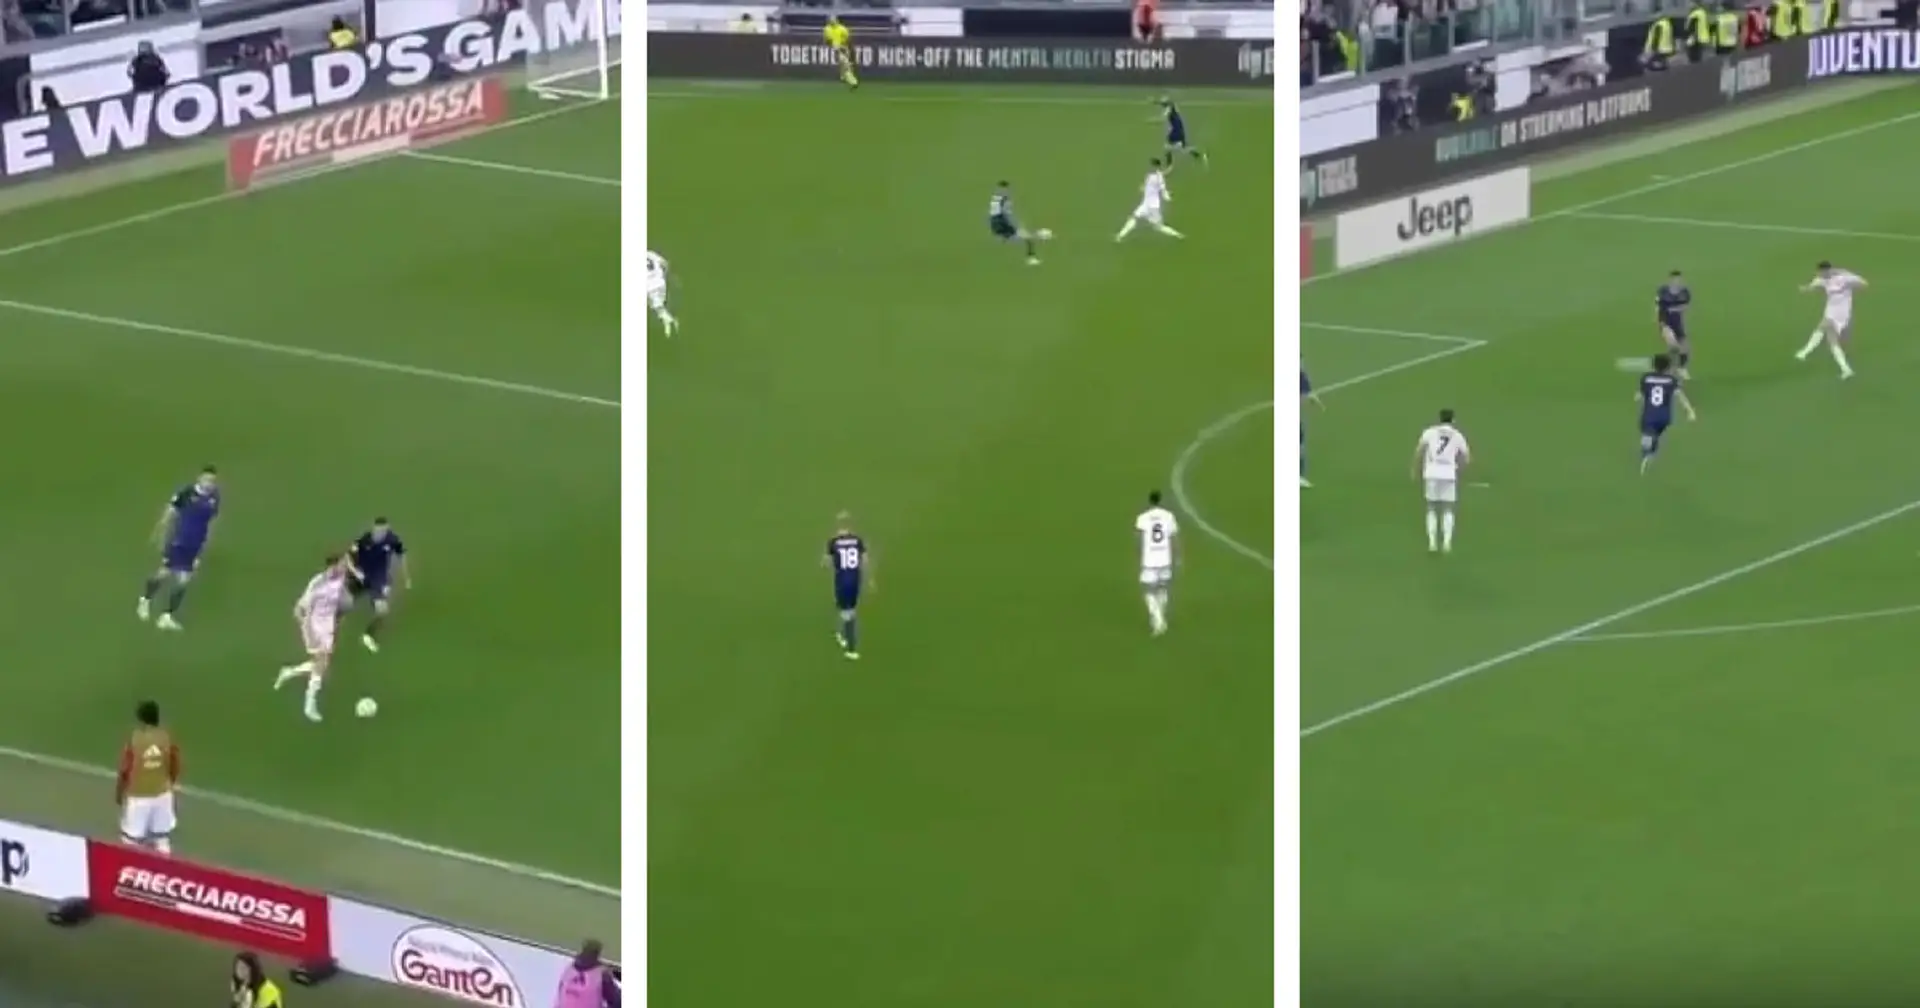 Perché la Juve non gioca sempre così? Il 2° gol contro la Lazio in Coppa Italia degno del City di Guardiola